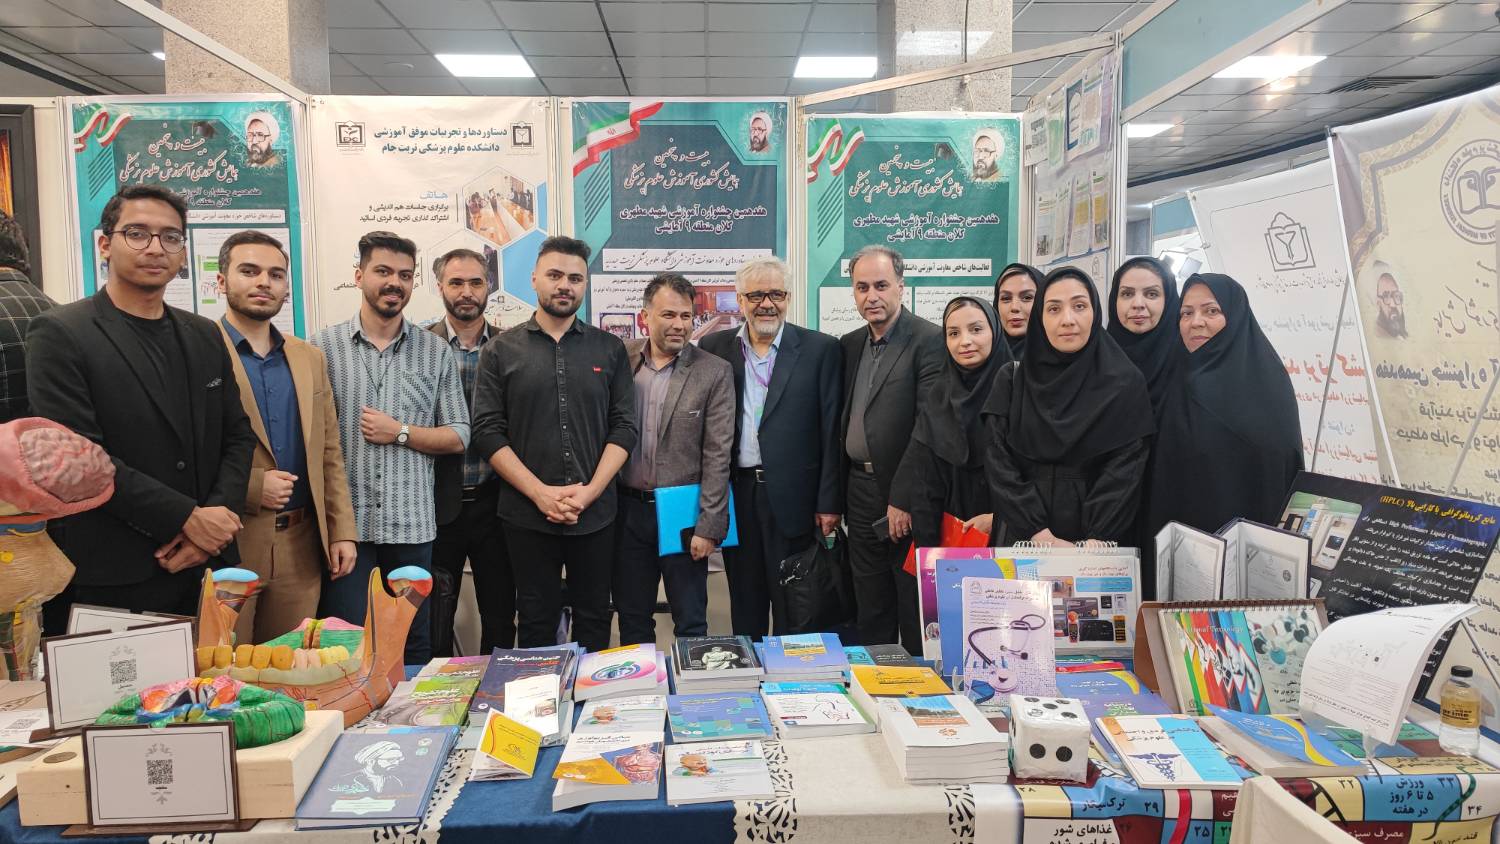 حضور دانشگاه علوم پزشکی خراسان شمالی در همایش کشوری آموزش علوم پزشکی و جشنواره آموزشی شهید مطهری